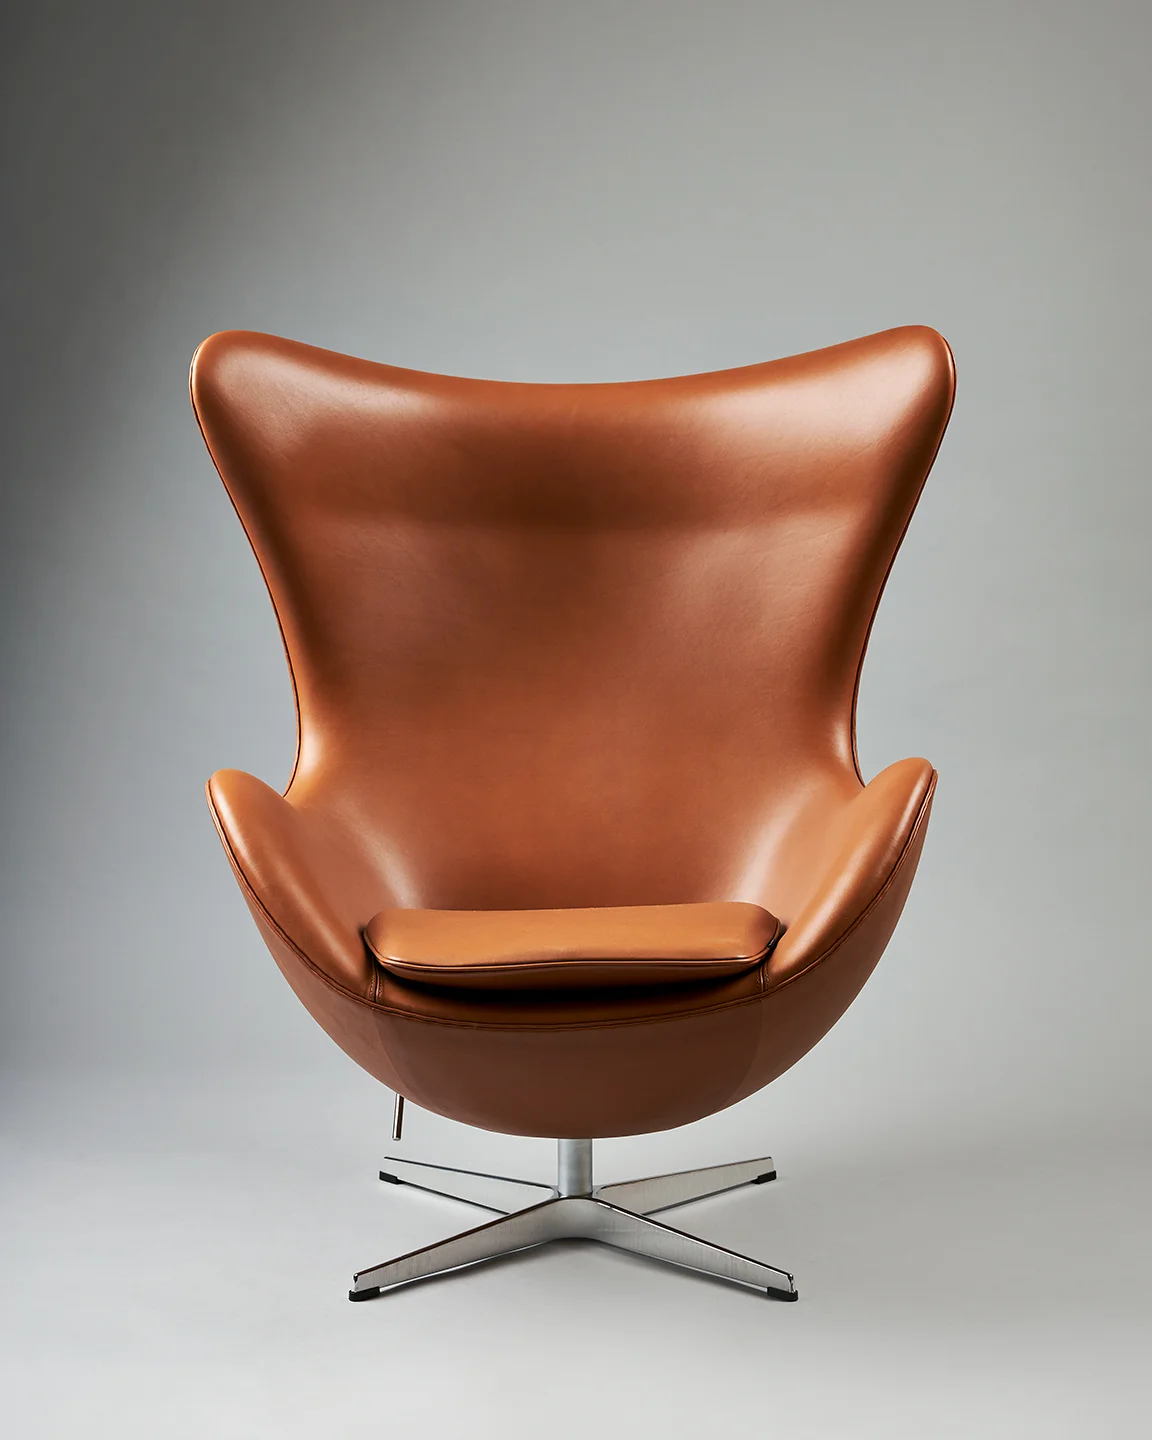 The - Arne Jacobsen